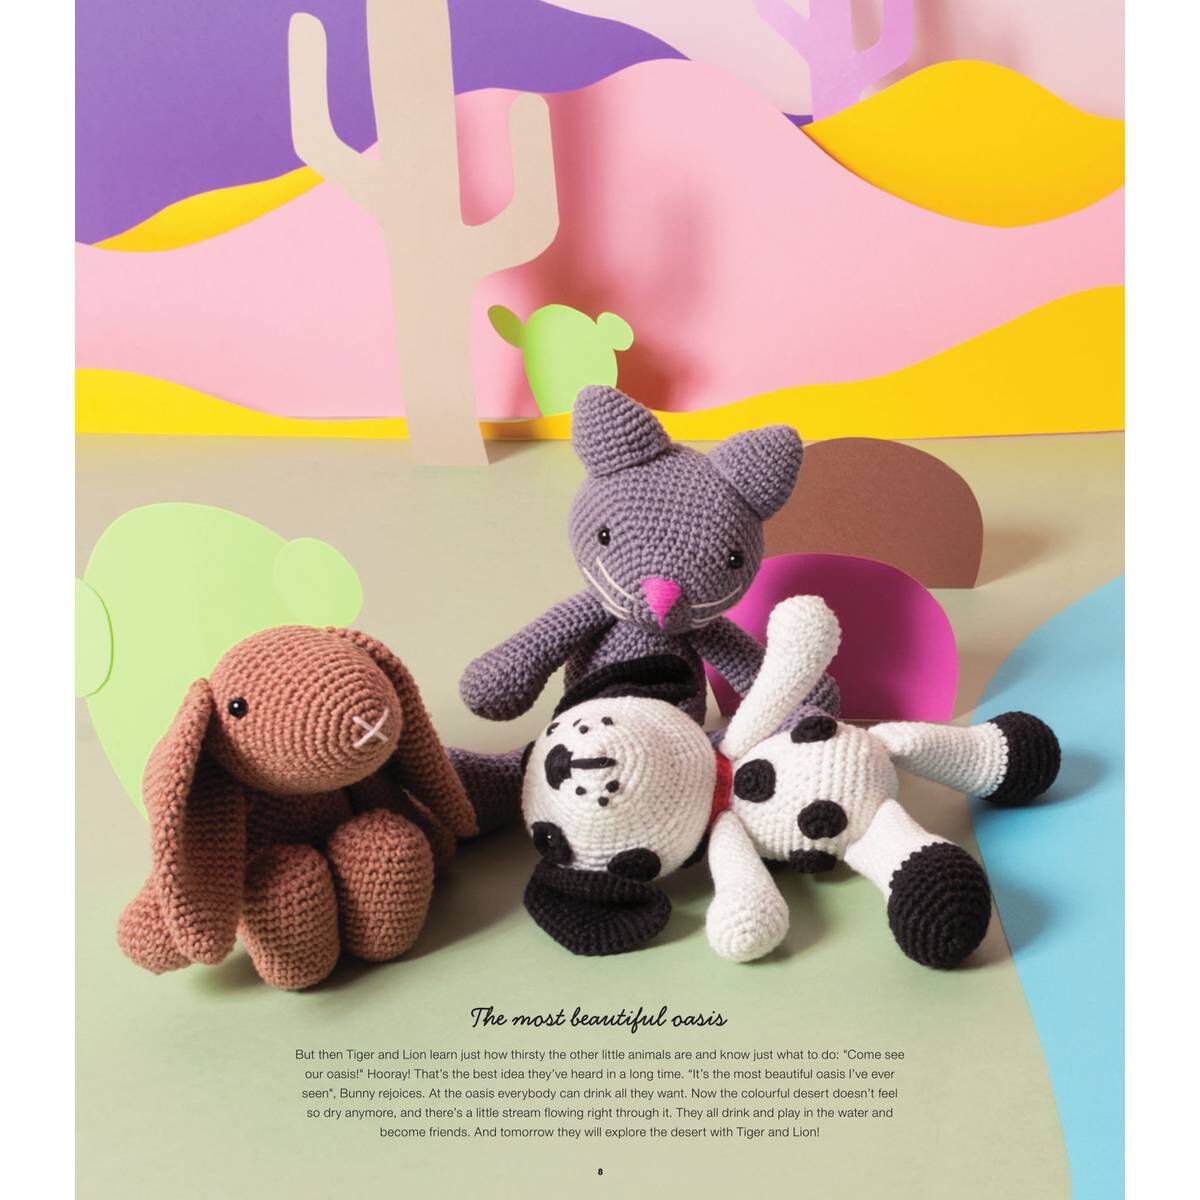 Ricorumi Puppies Crochet Amigurumi Pattern Book